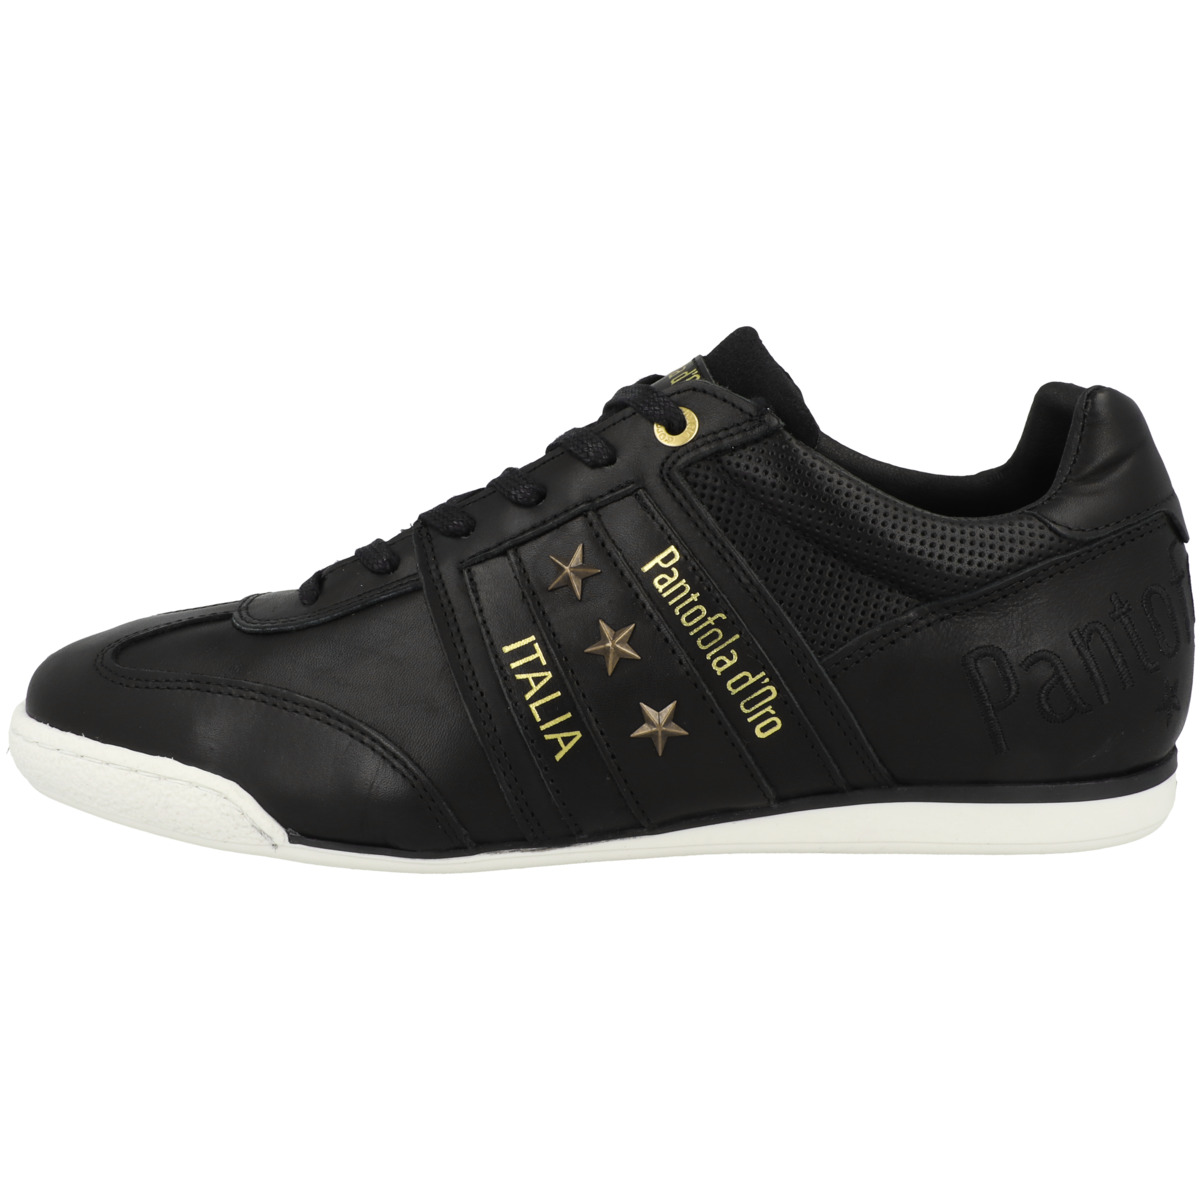 Pantofola d'Oro Imola Classic 2.0 Uomo Low Sneaker low